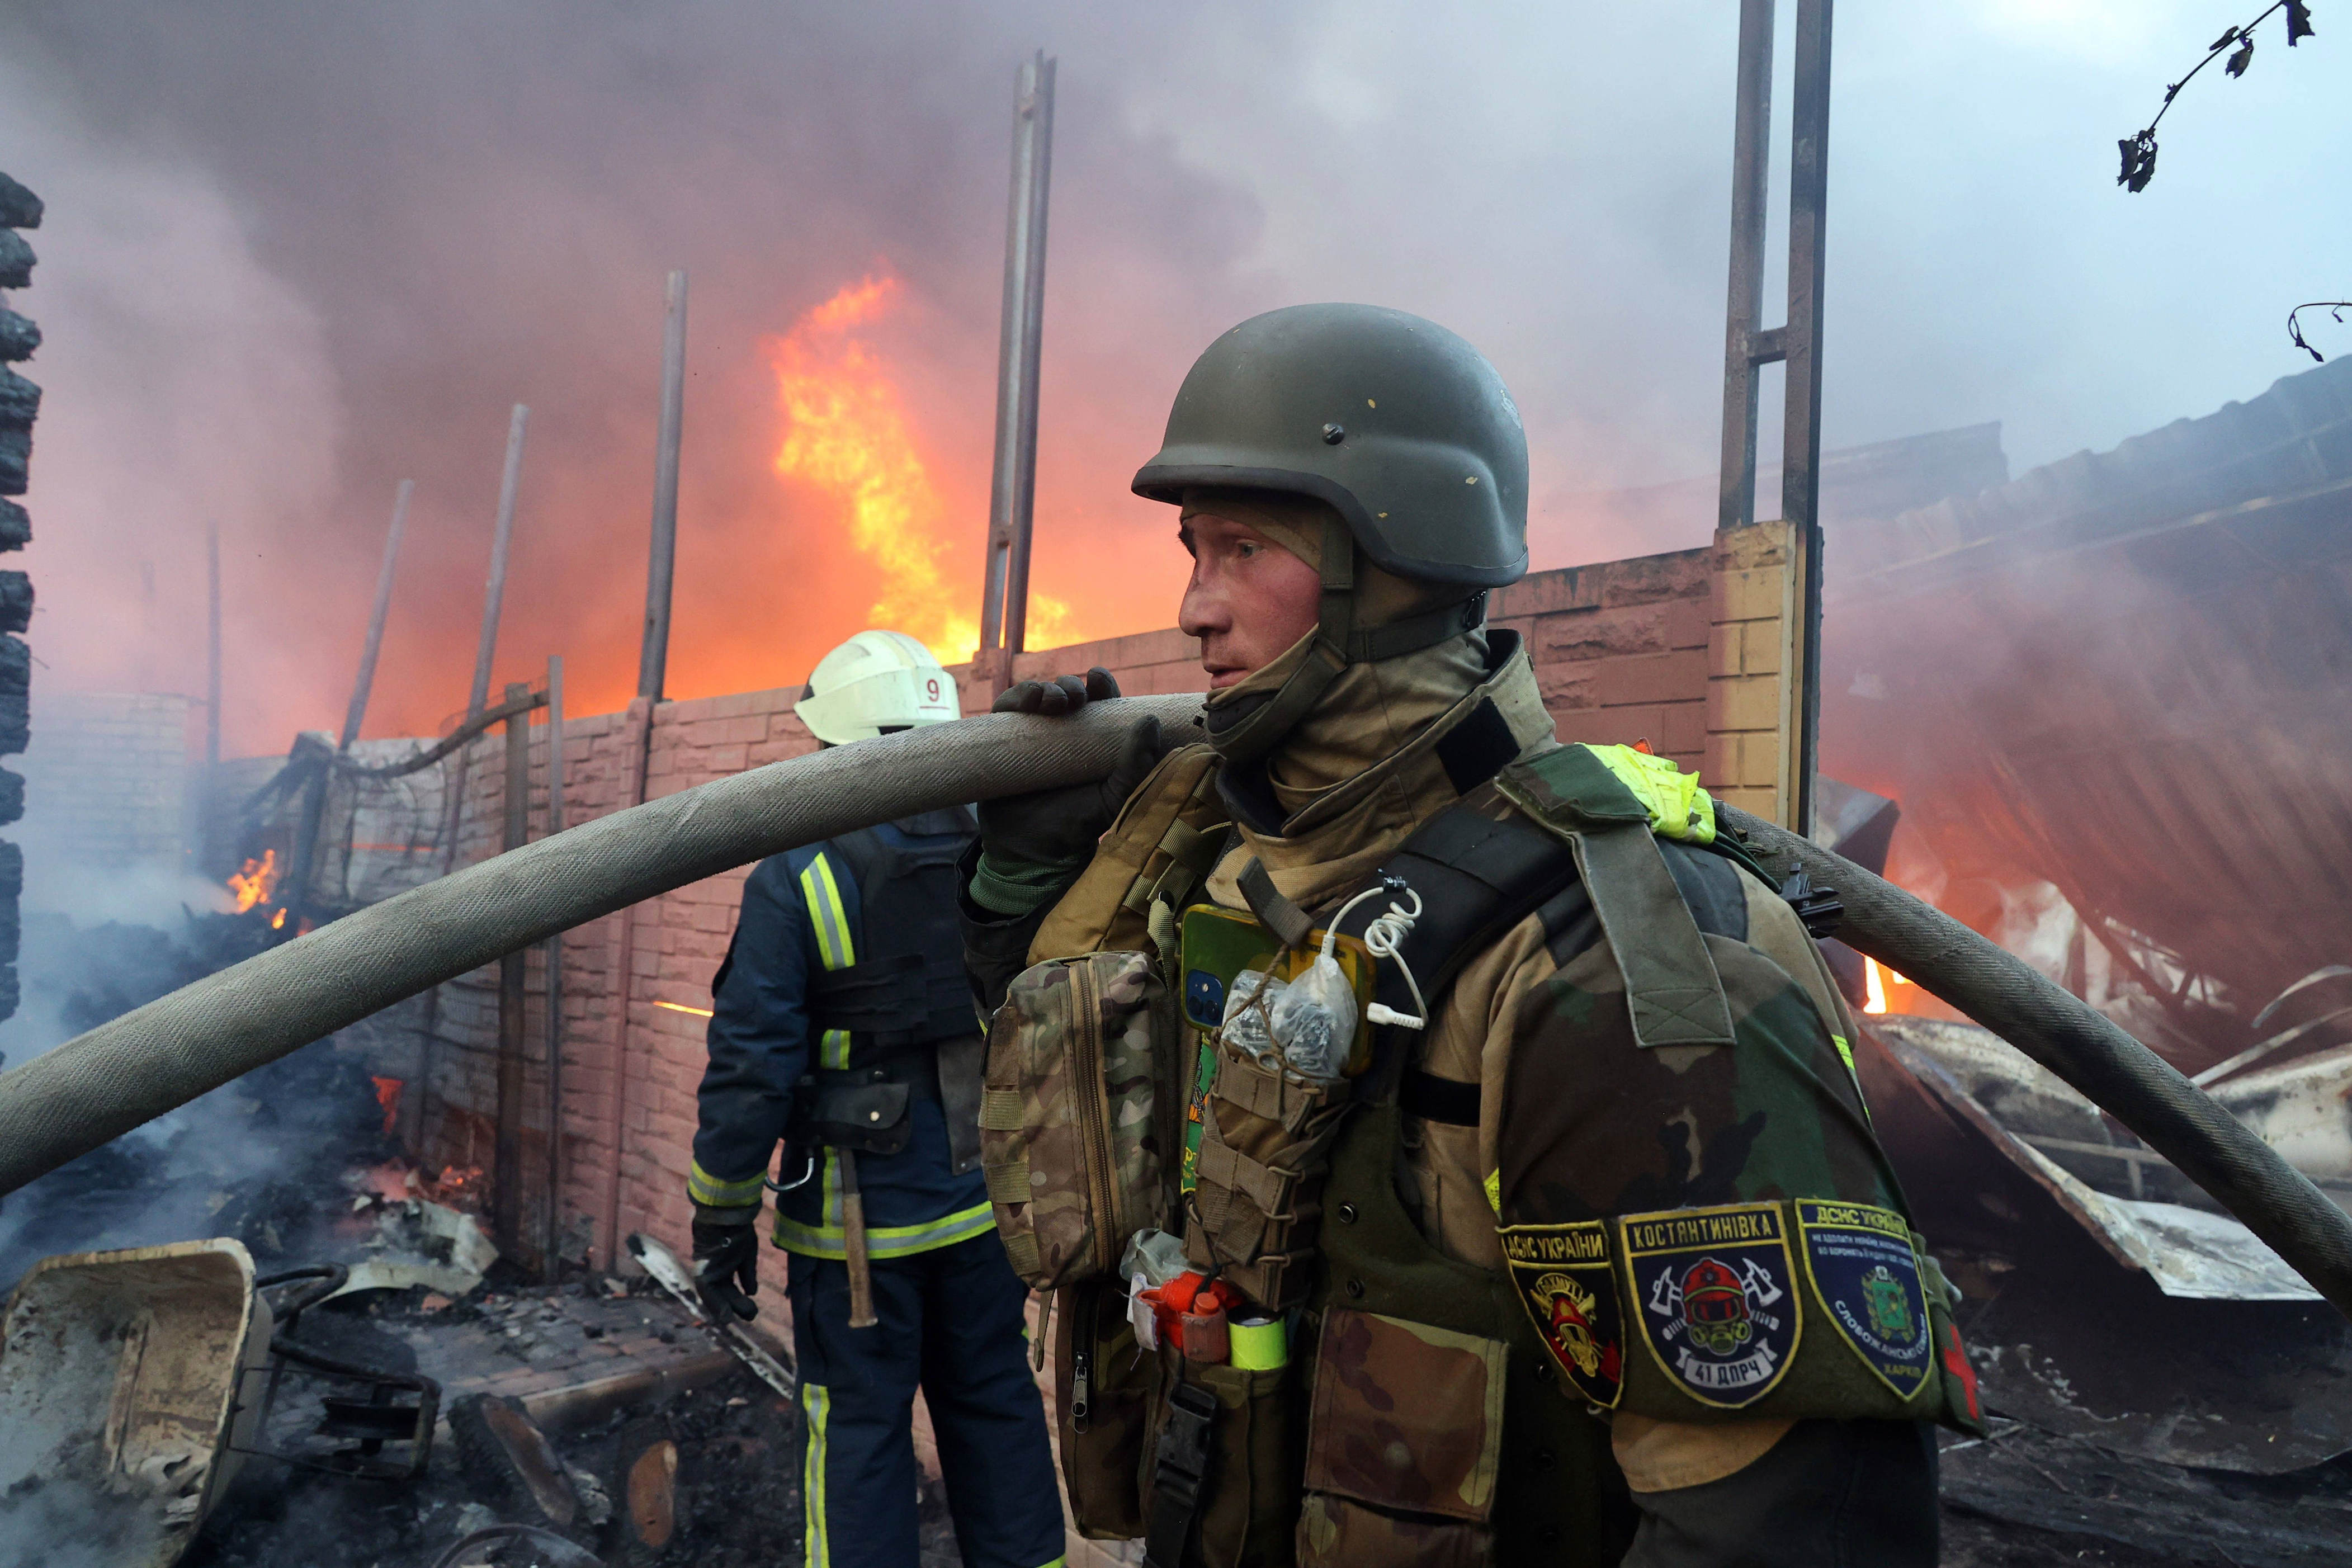 schwierigste lage seit kriegsbeginn: die ukrainer bekämpfen neben den russen auch ihren pessimismus